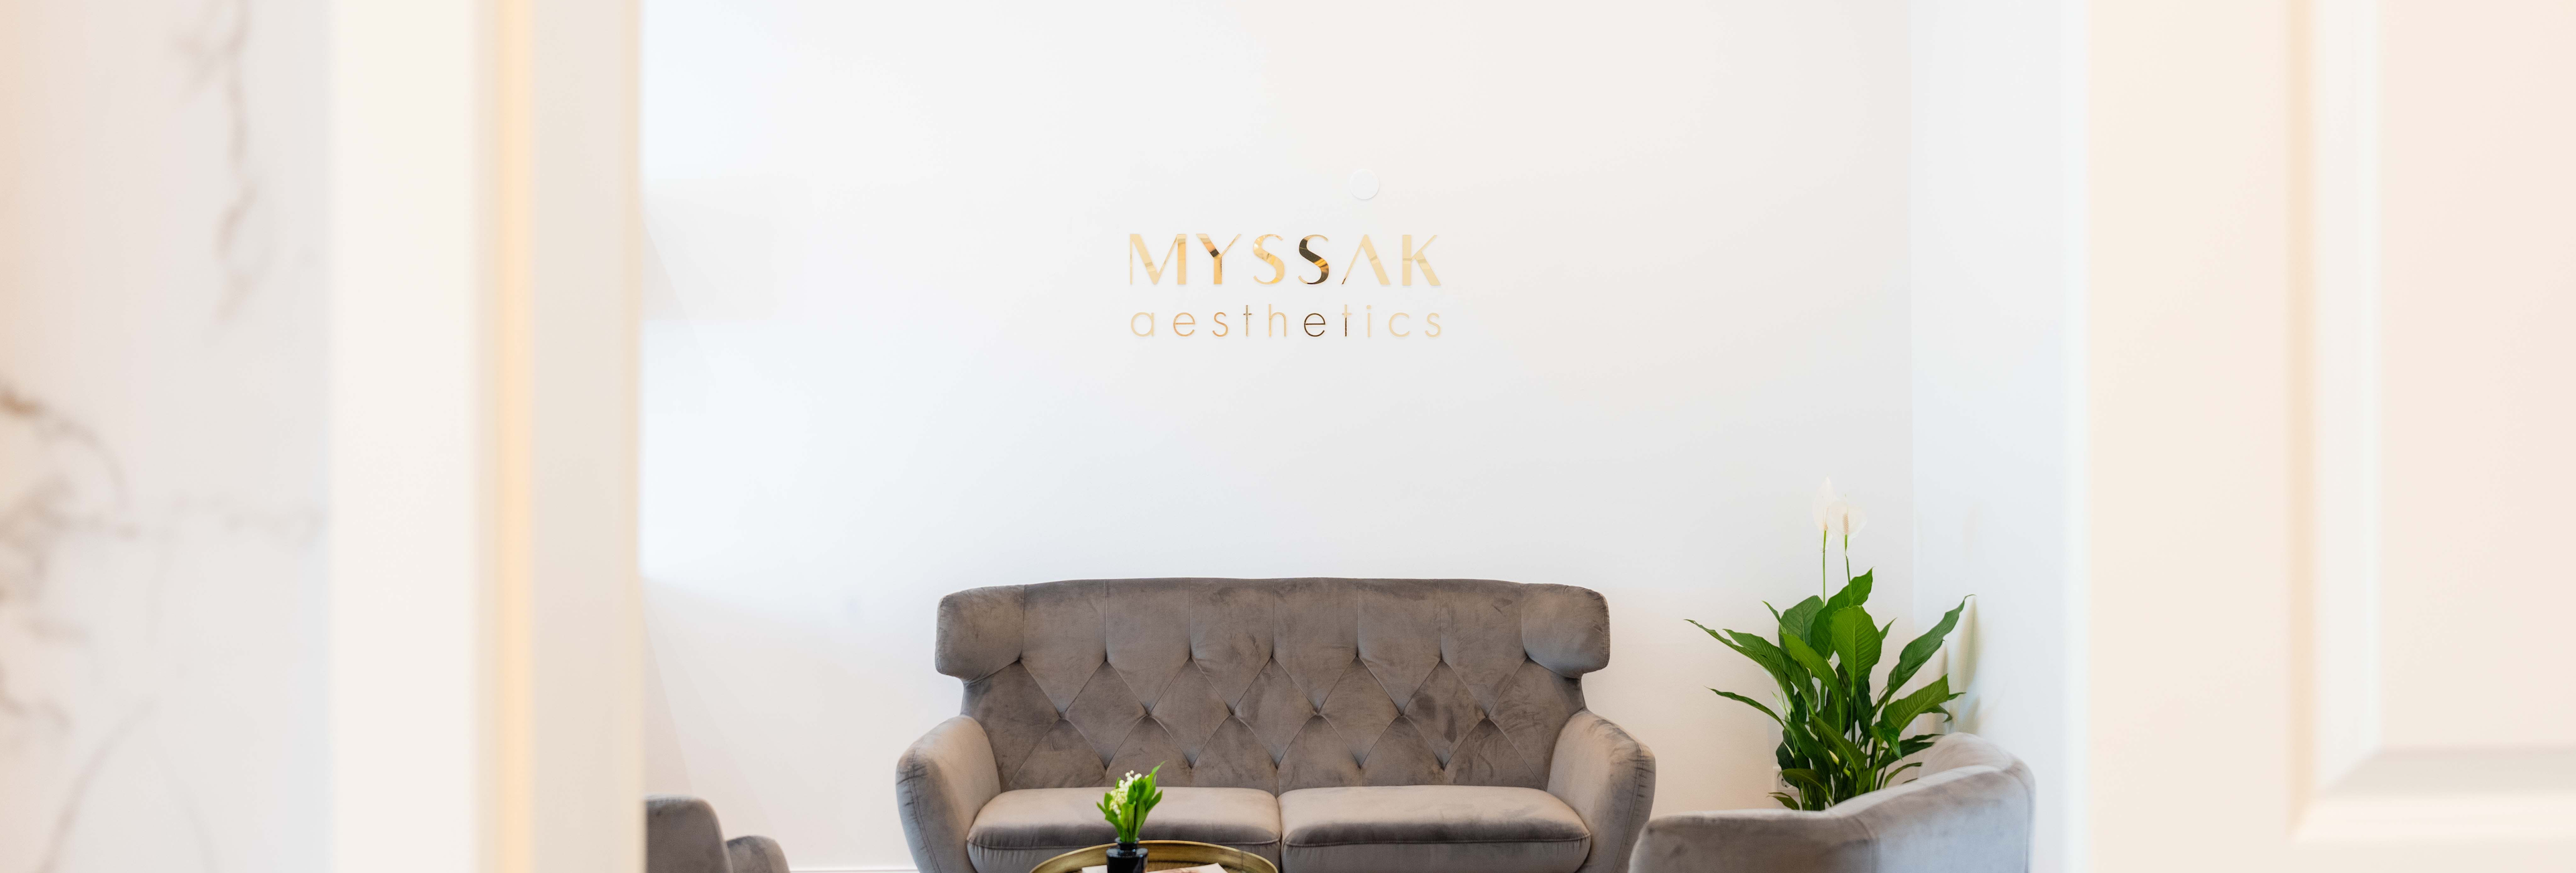 Bild von einem Raum in einer Privatpraxis mit einem Sofa und dem Logo von MYSSAK aesthetics